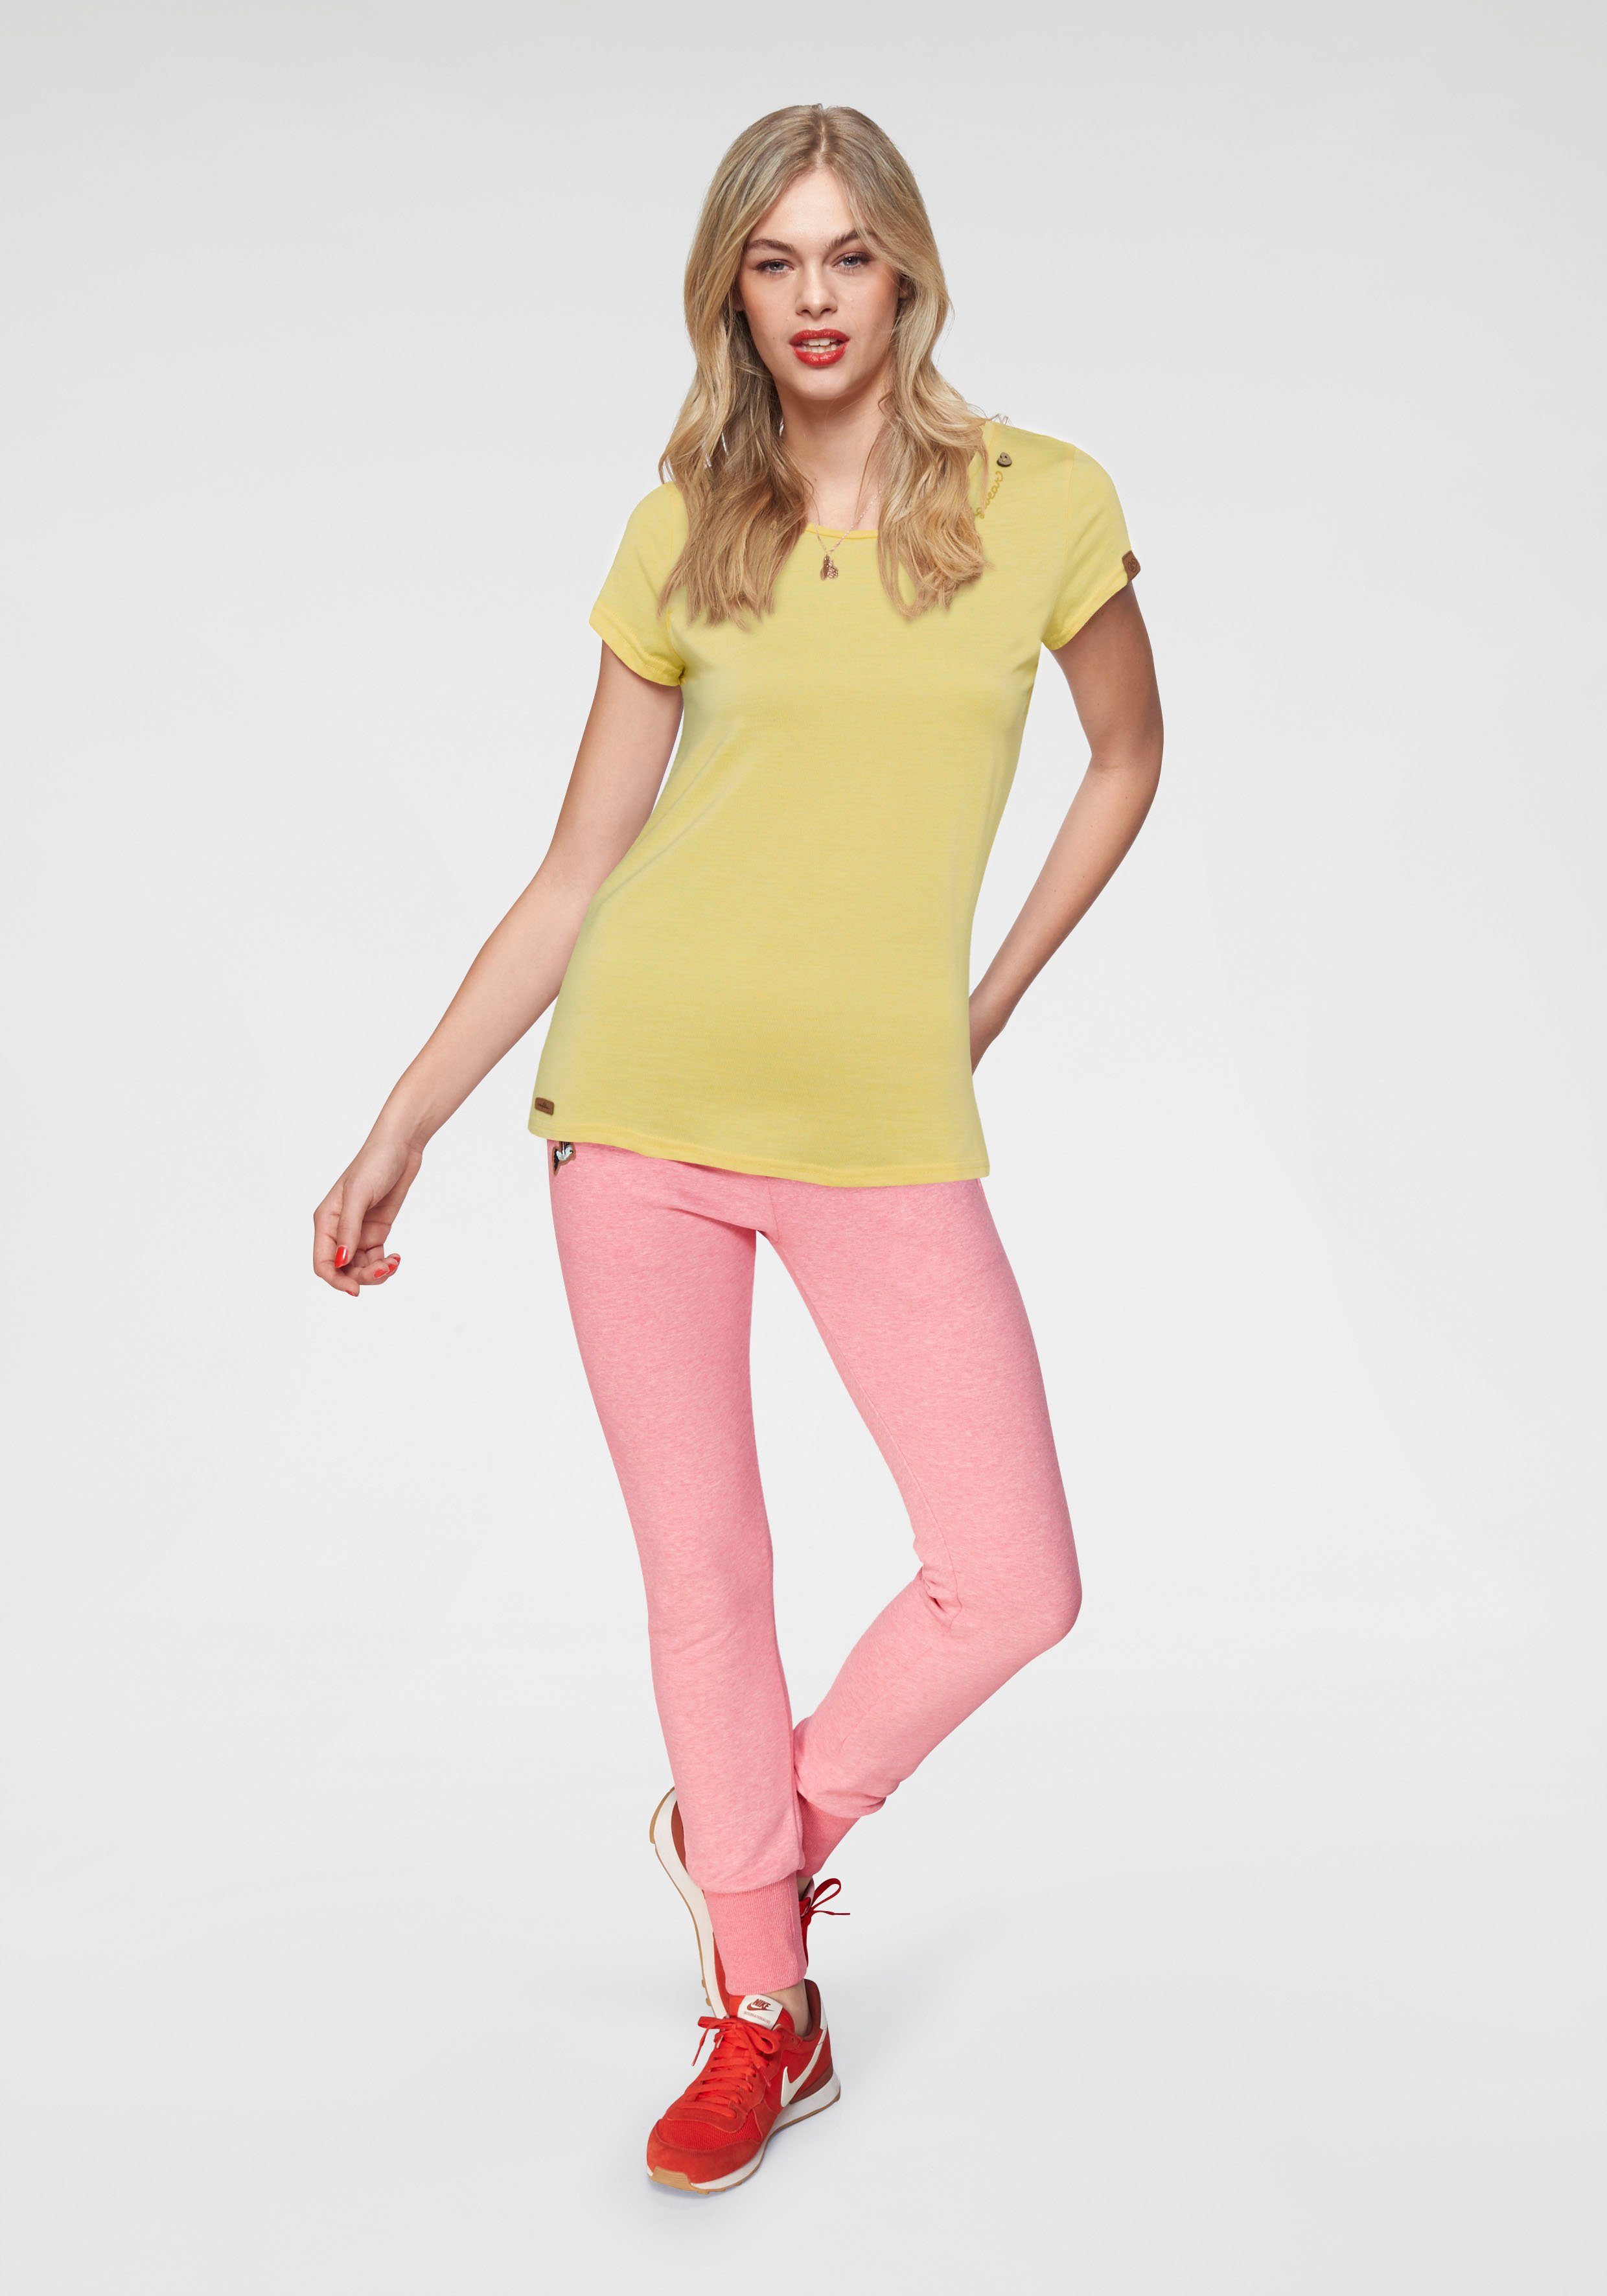 Ragwear T-Shirt MINT O mit yellow 6028 und natürlicher Zierknopf-Applikation Holzoptik in Logoschriftzug